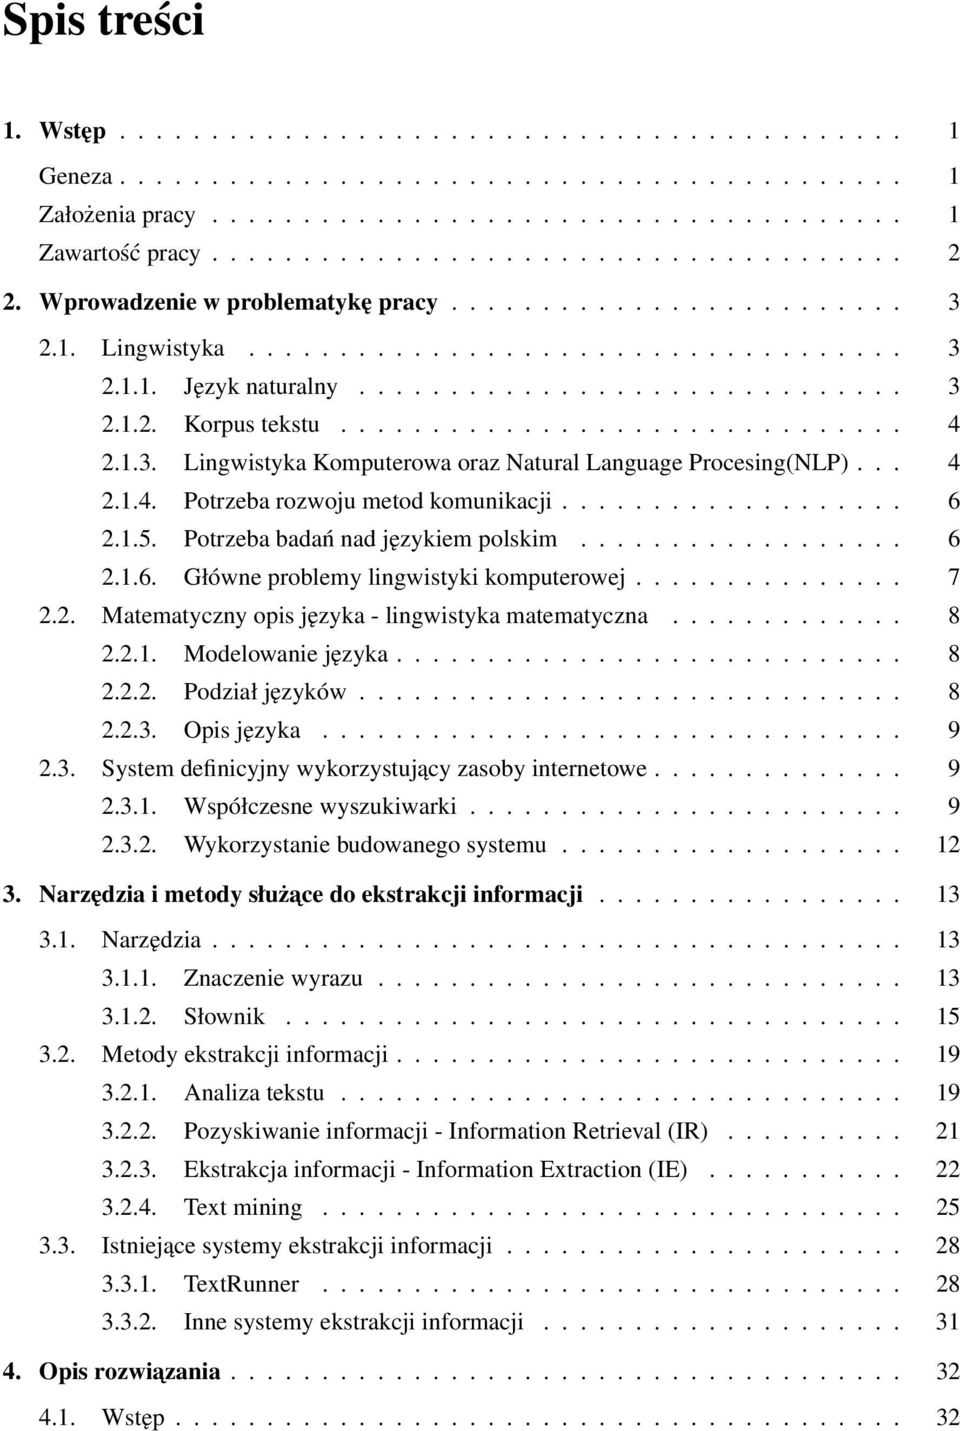 1.3. Lingwistyka Komputerowa oraz Natural Language Procesing(NLP)... 4 2.1.4. Potrzeba rozwoju metod komunikacji................... 6 2.1.5. Potrzeba badań nad językiem polskim.................. 6 2.1.6. Główne problemy lingwistyki komputerowej.